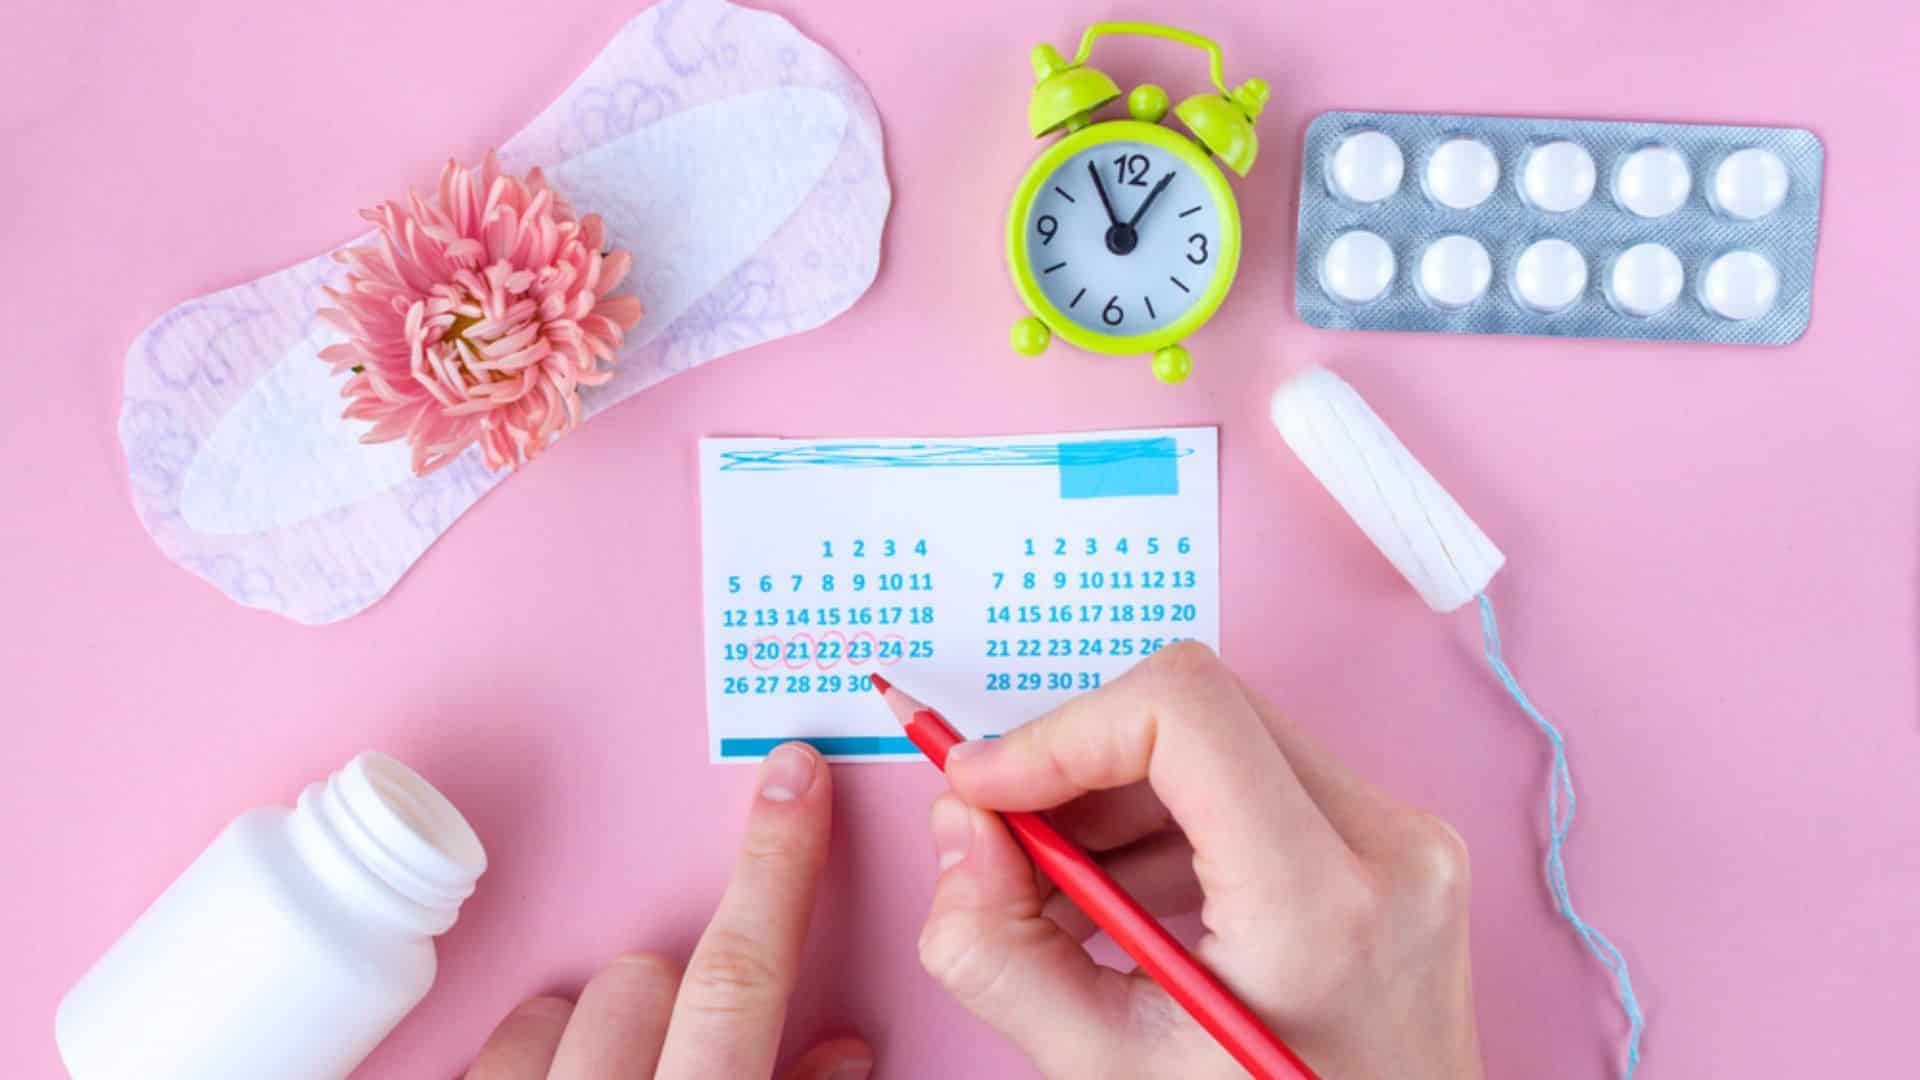 Menstruação duas vezes no mês, tem alguma coisa errada? - Blog Inciclo